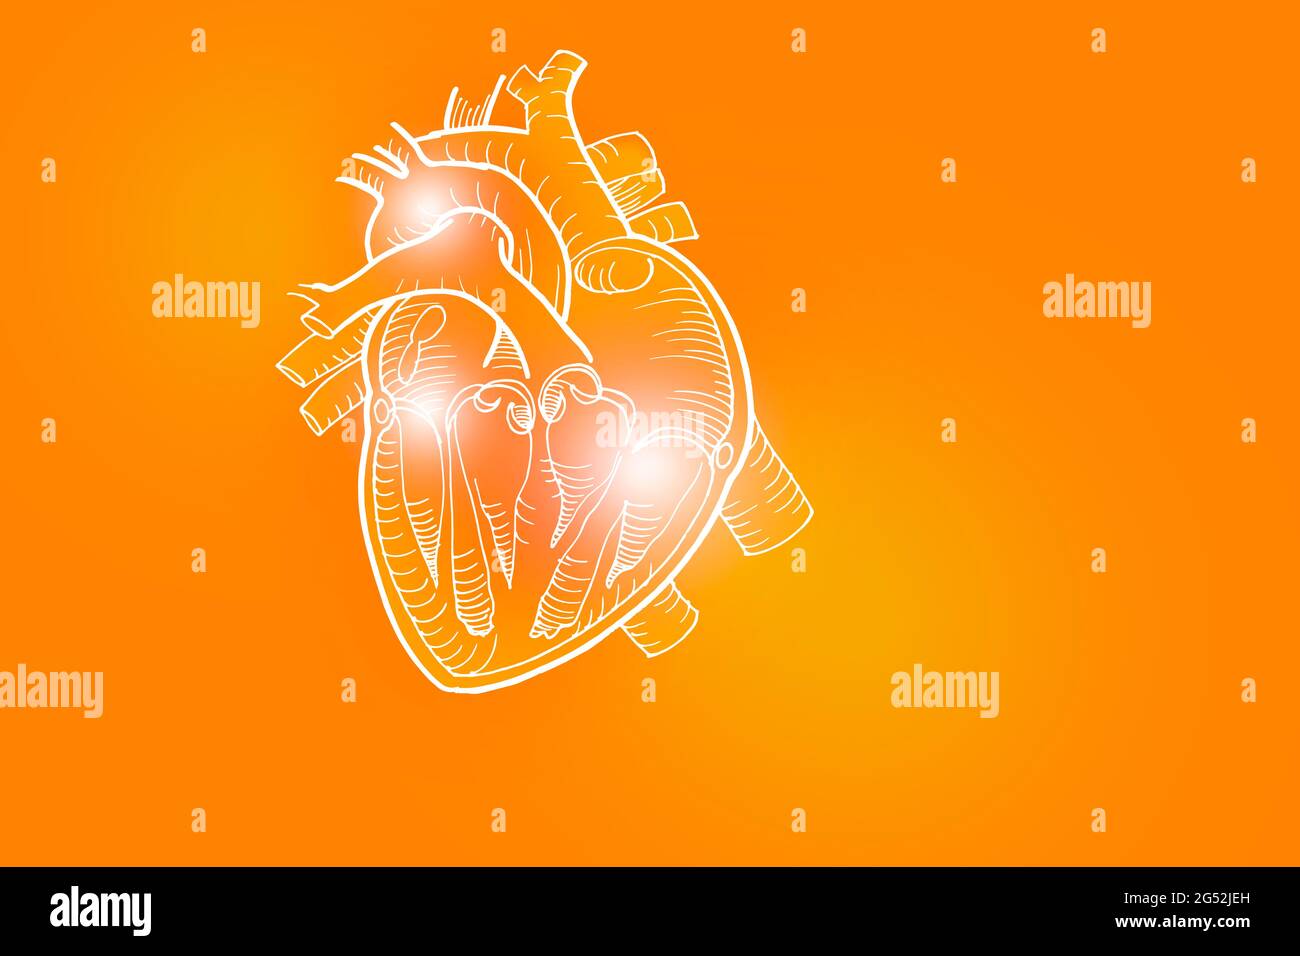 Handgezeichnete Darstellung des menschlichen Herzens auf positiv orangefarbenem Hintergrund. Medizin, Wissenschaftsset mit menschlichen Hauptorganen mit leerem Kopierraum für Text Stockfoto